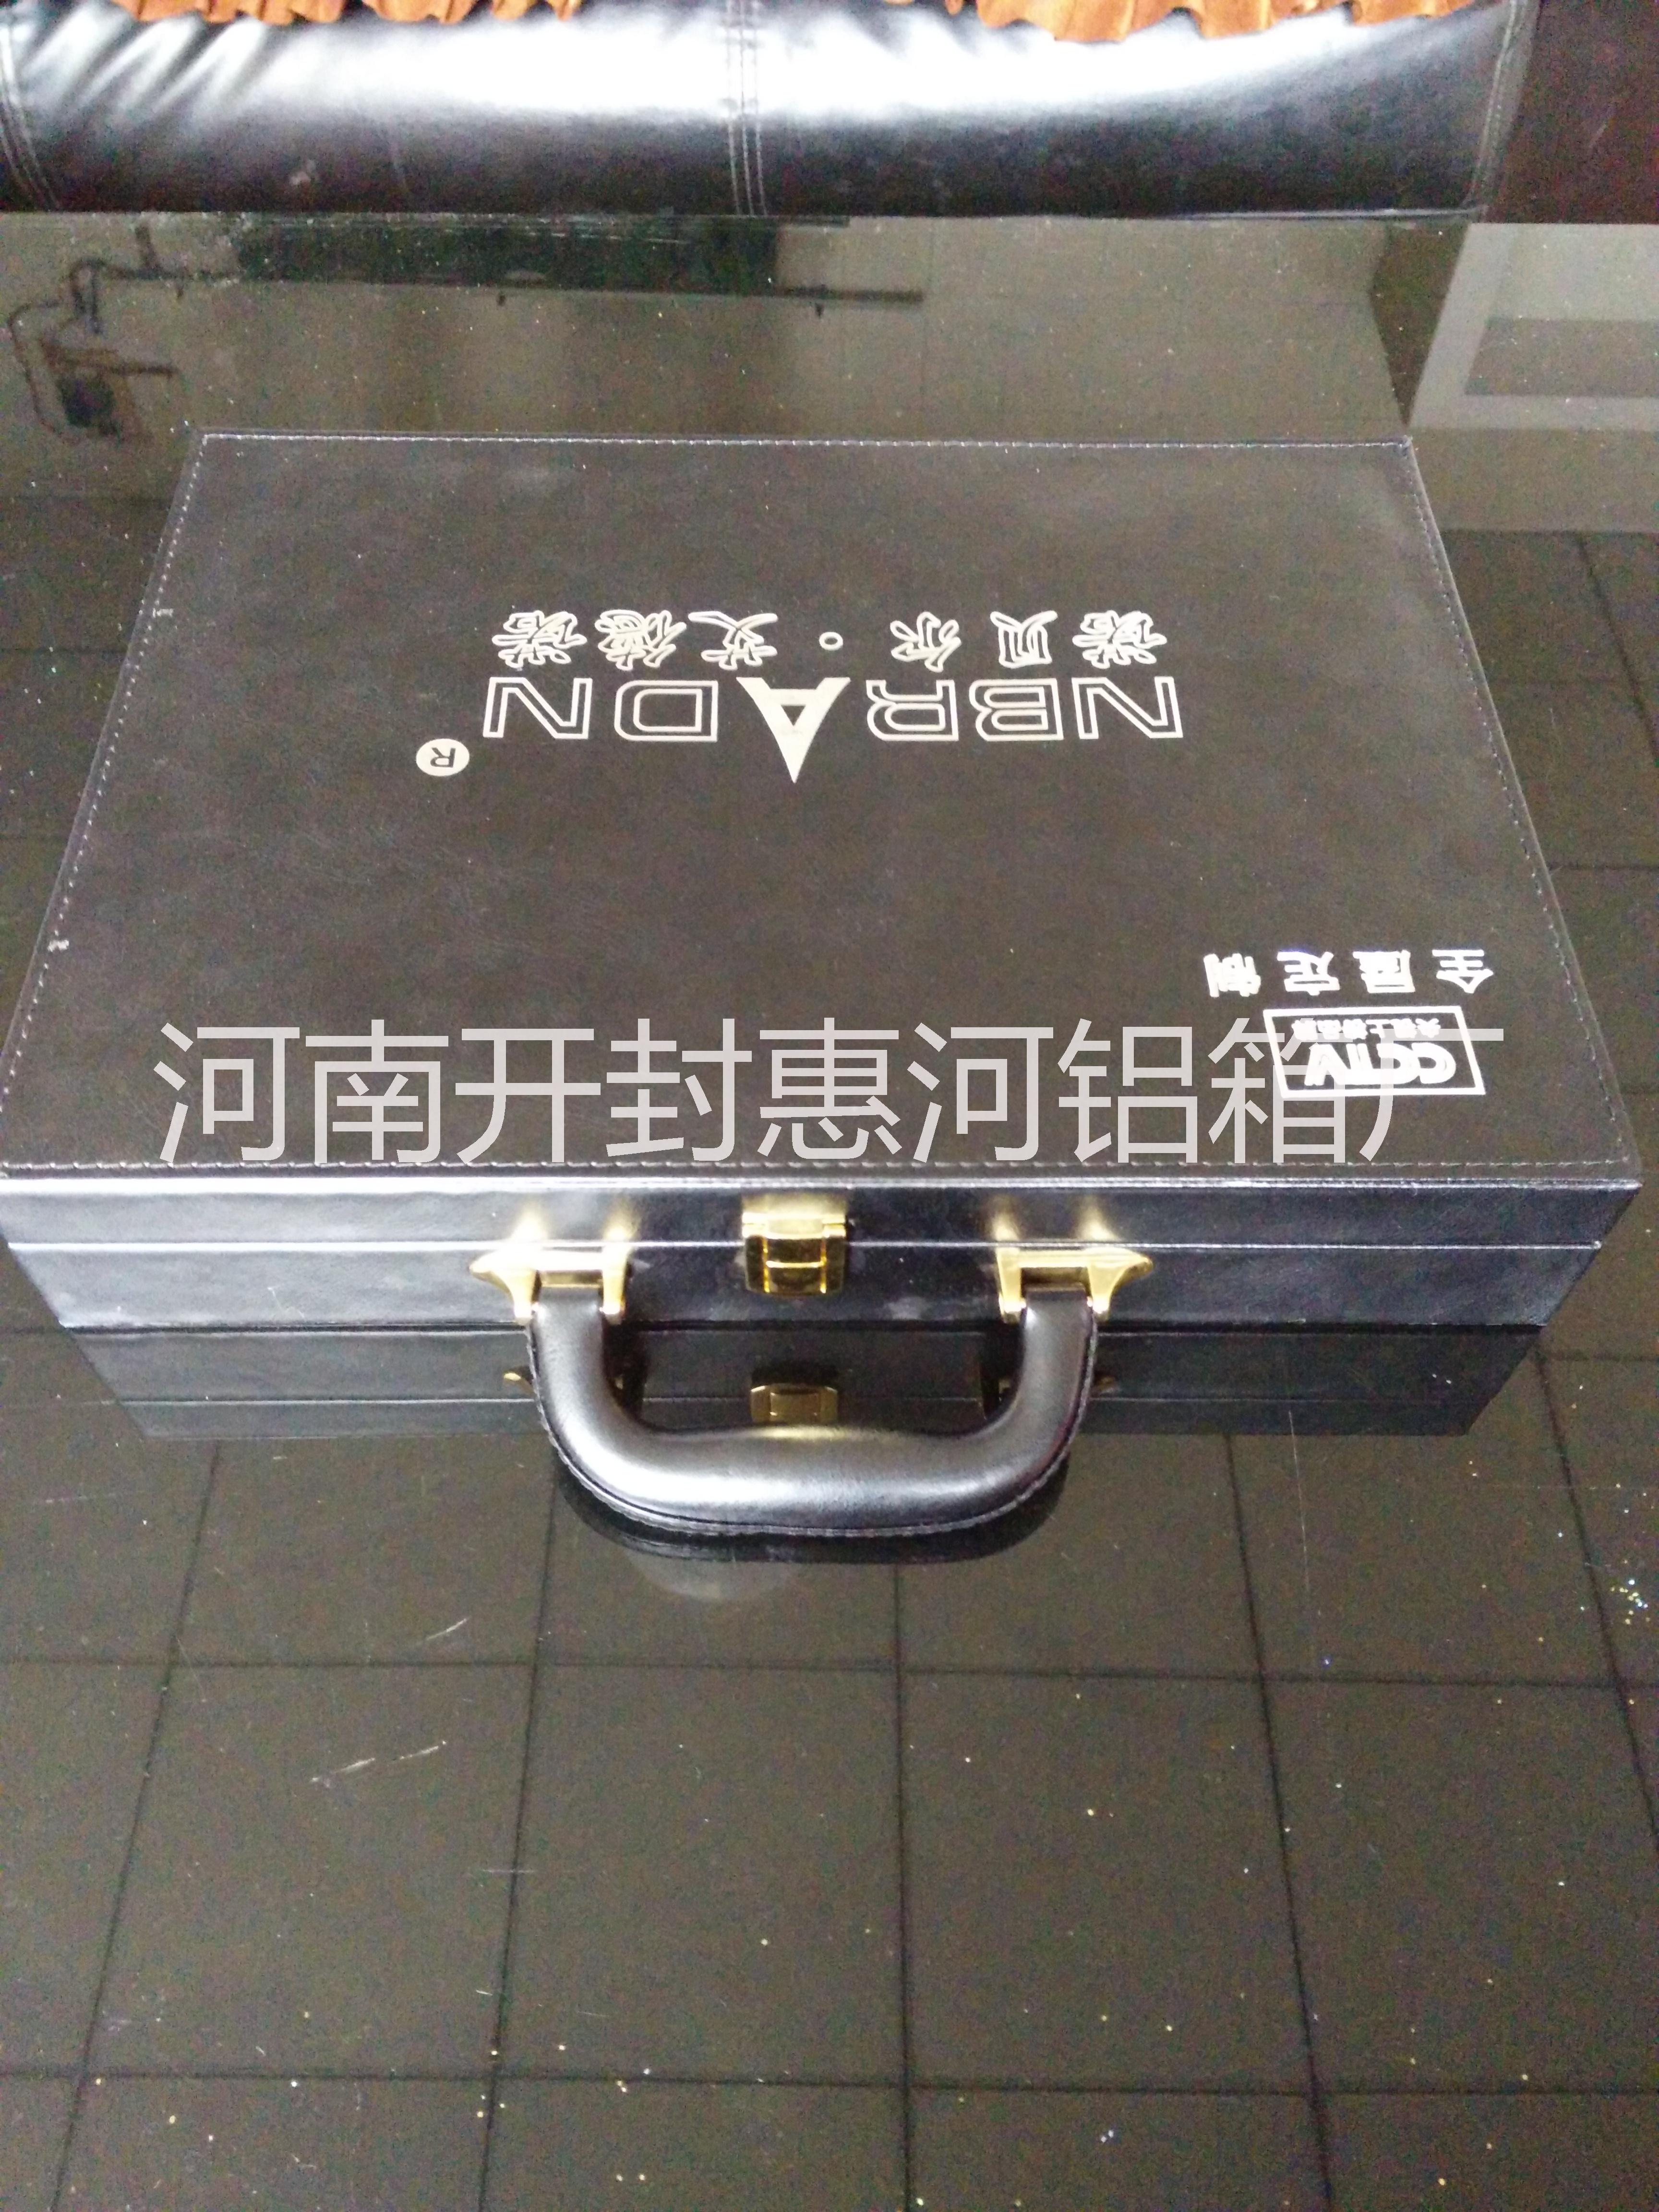 按需定制色卡盒木盒皮盒的厂家河南惠河铝箱专业生产各种款式规格石英石人造石烤漆橱柜UV板铝盒木盒皮盒15037898383图片